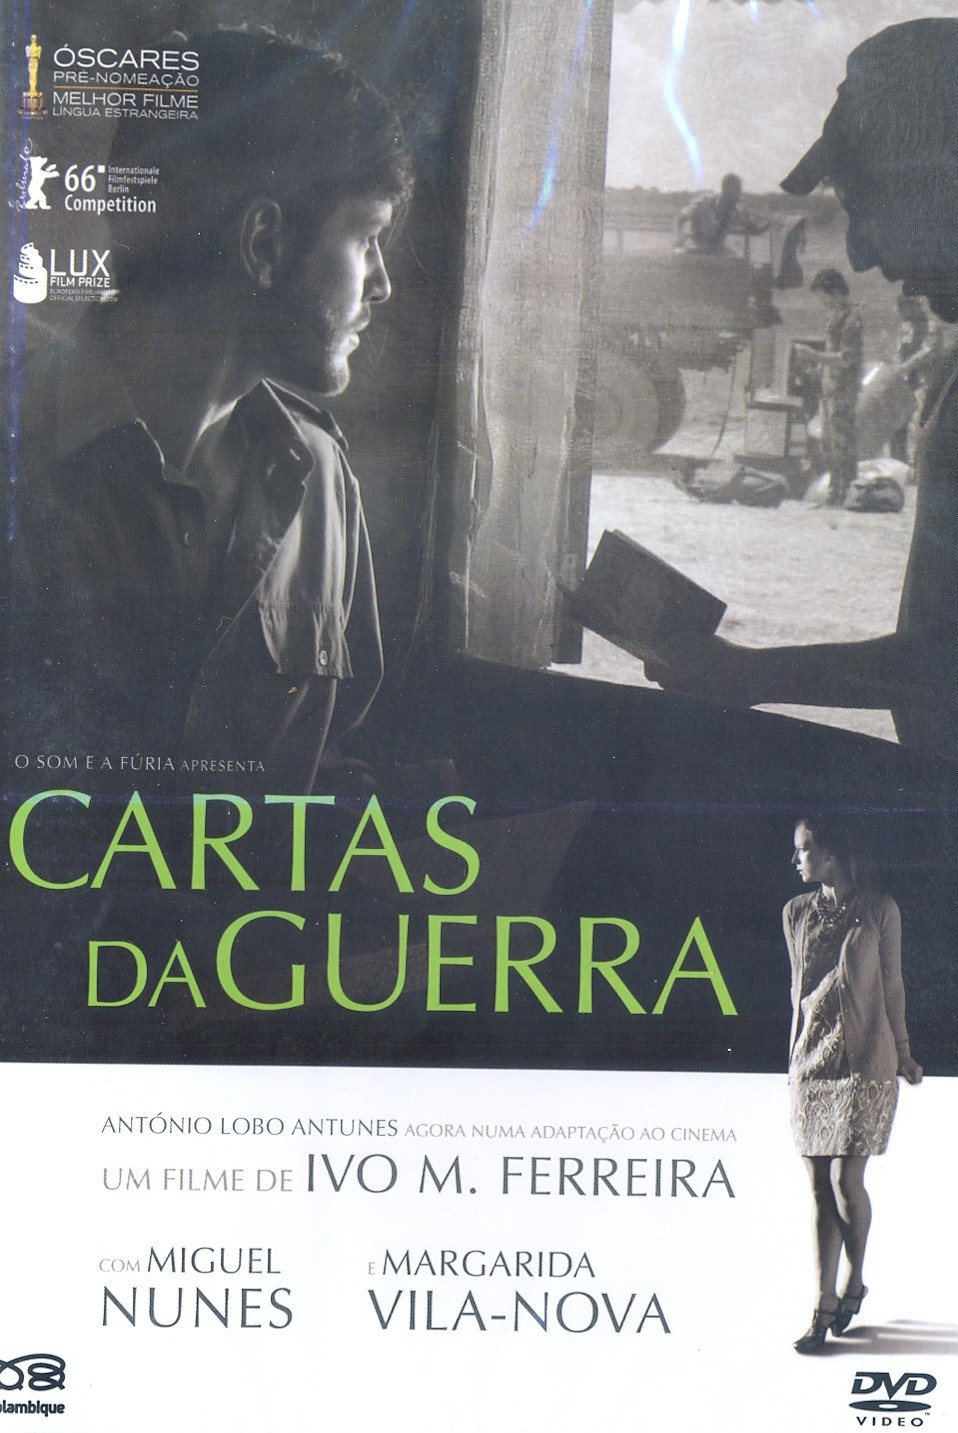 Ivo M. Ferreira - Cartas da Guerra (DVD)